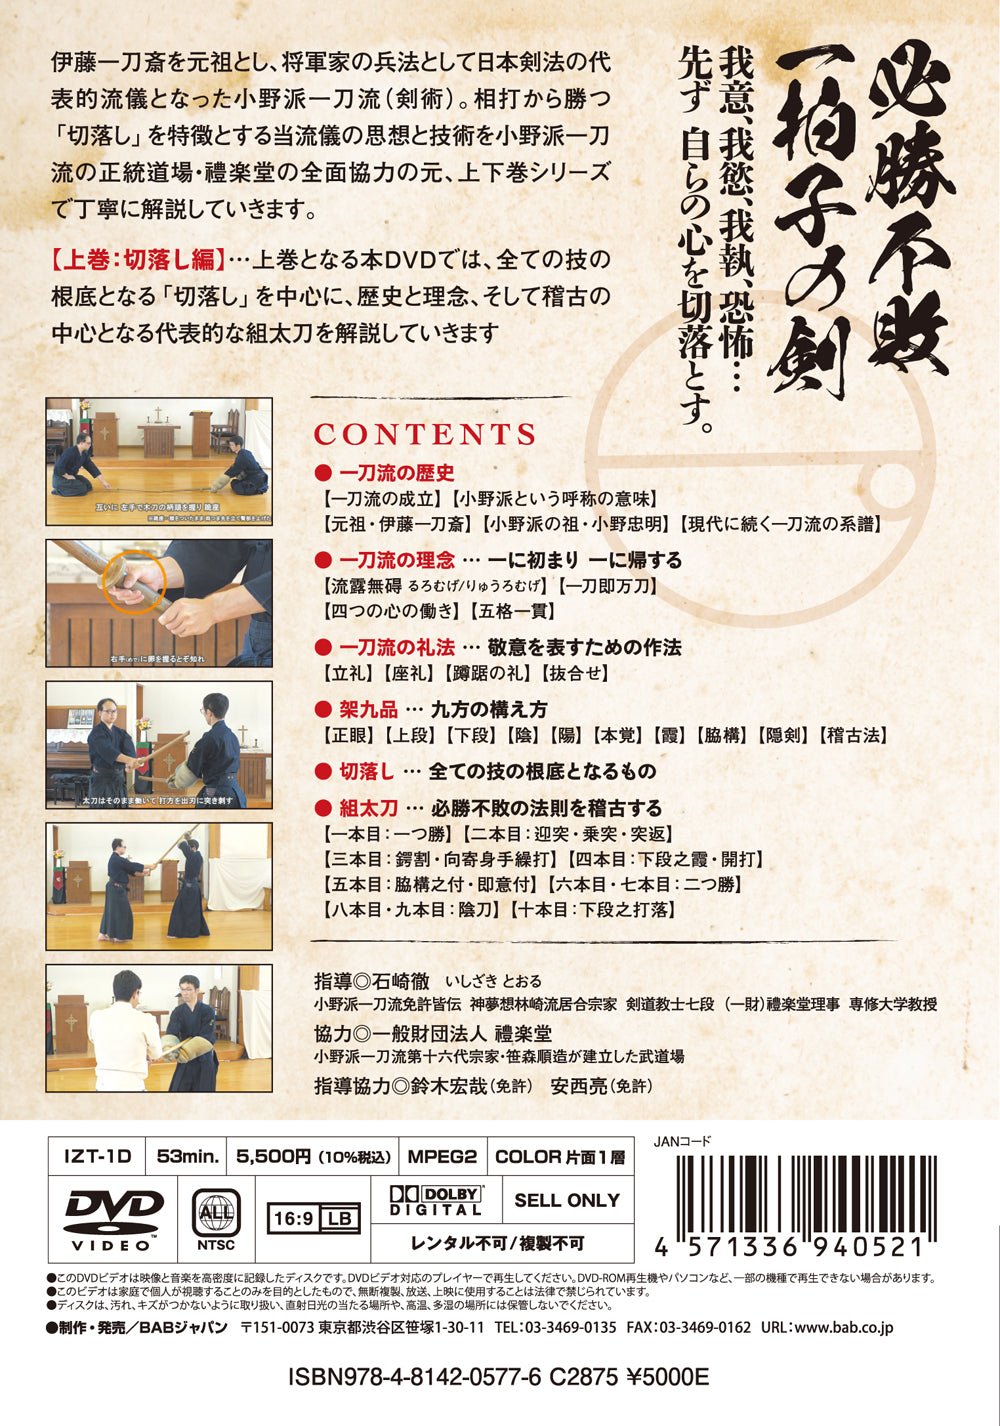 Ono Ha Itto Ryu Kenjutsu Vol 1 DVD de Toru Ishizaki